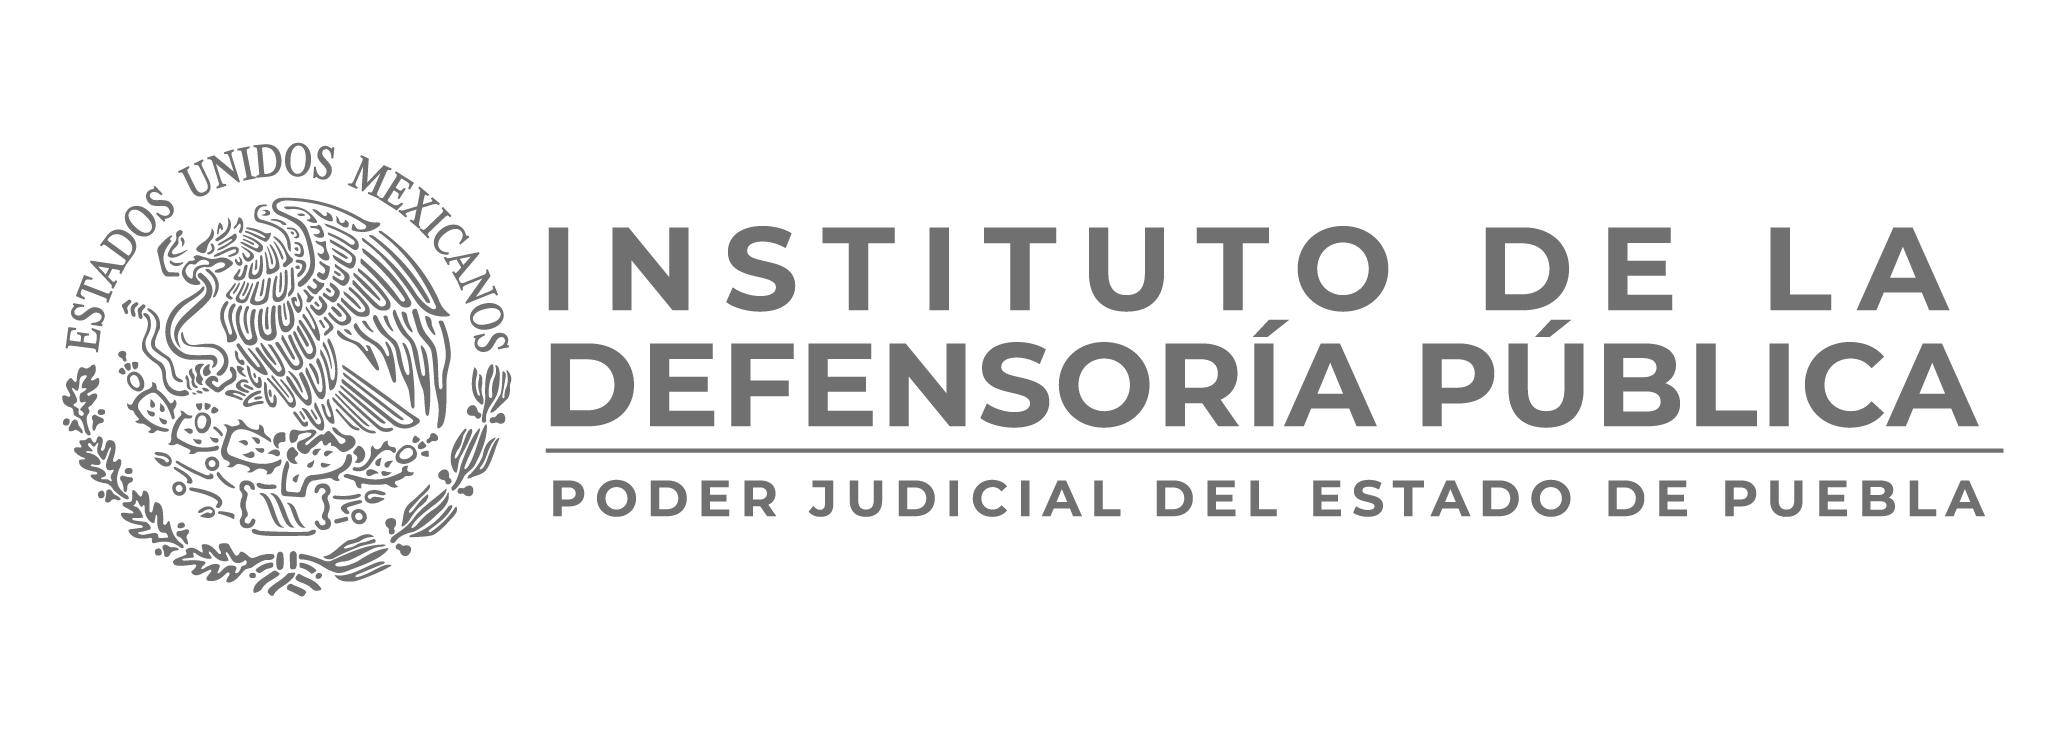 Poder Judicial del Estado de Puebla.